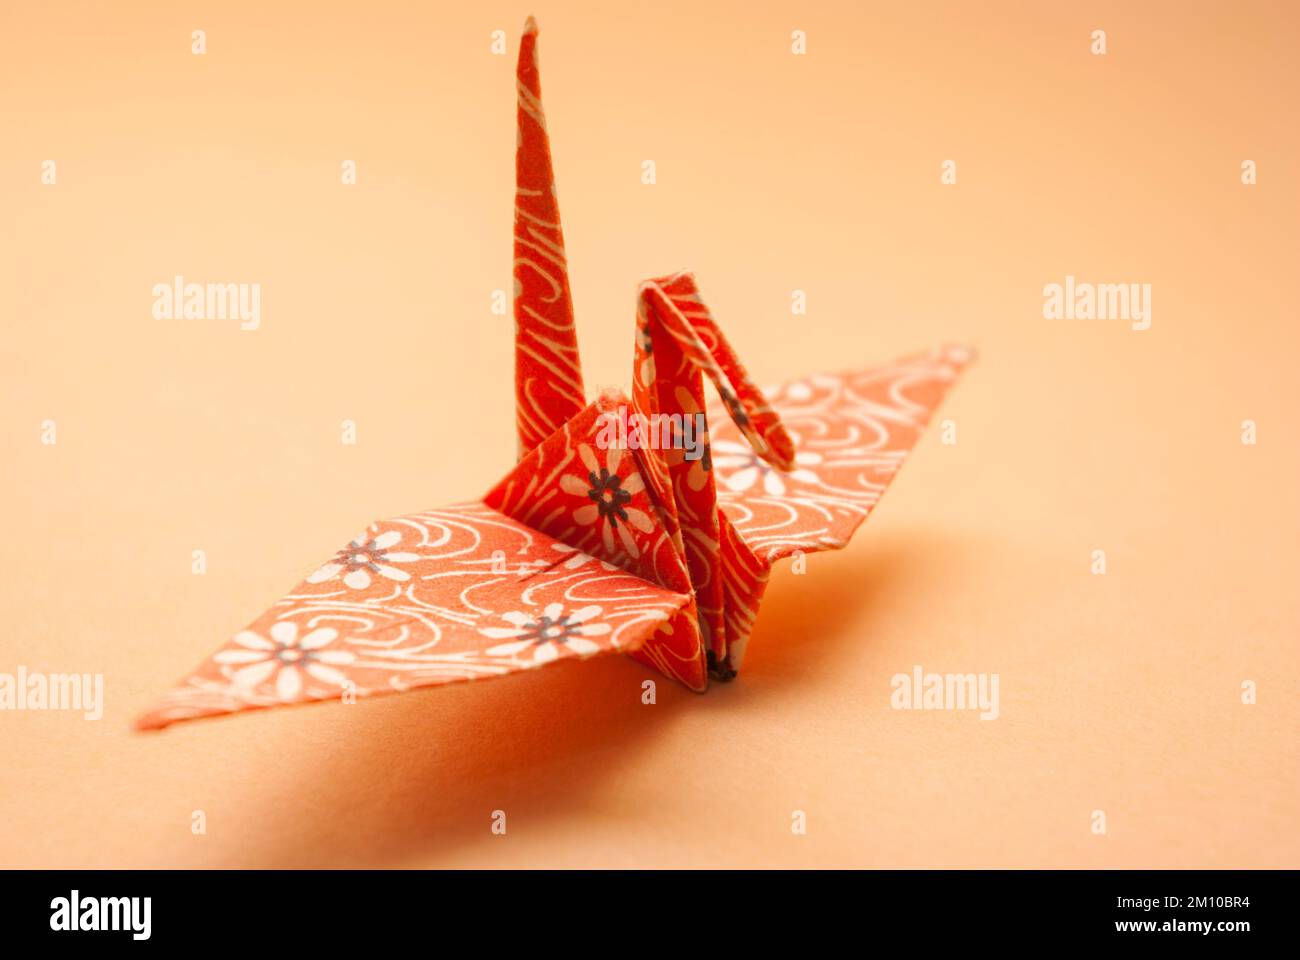 Der Papierkran wurde traditionell nach der japanischen Origami-Kunst gefaltet. Stockfoto